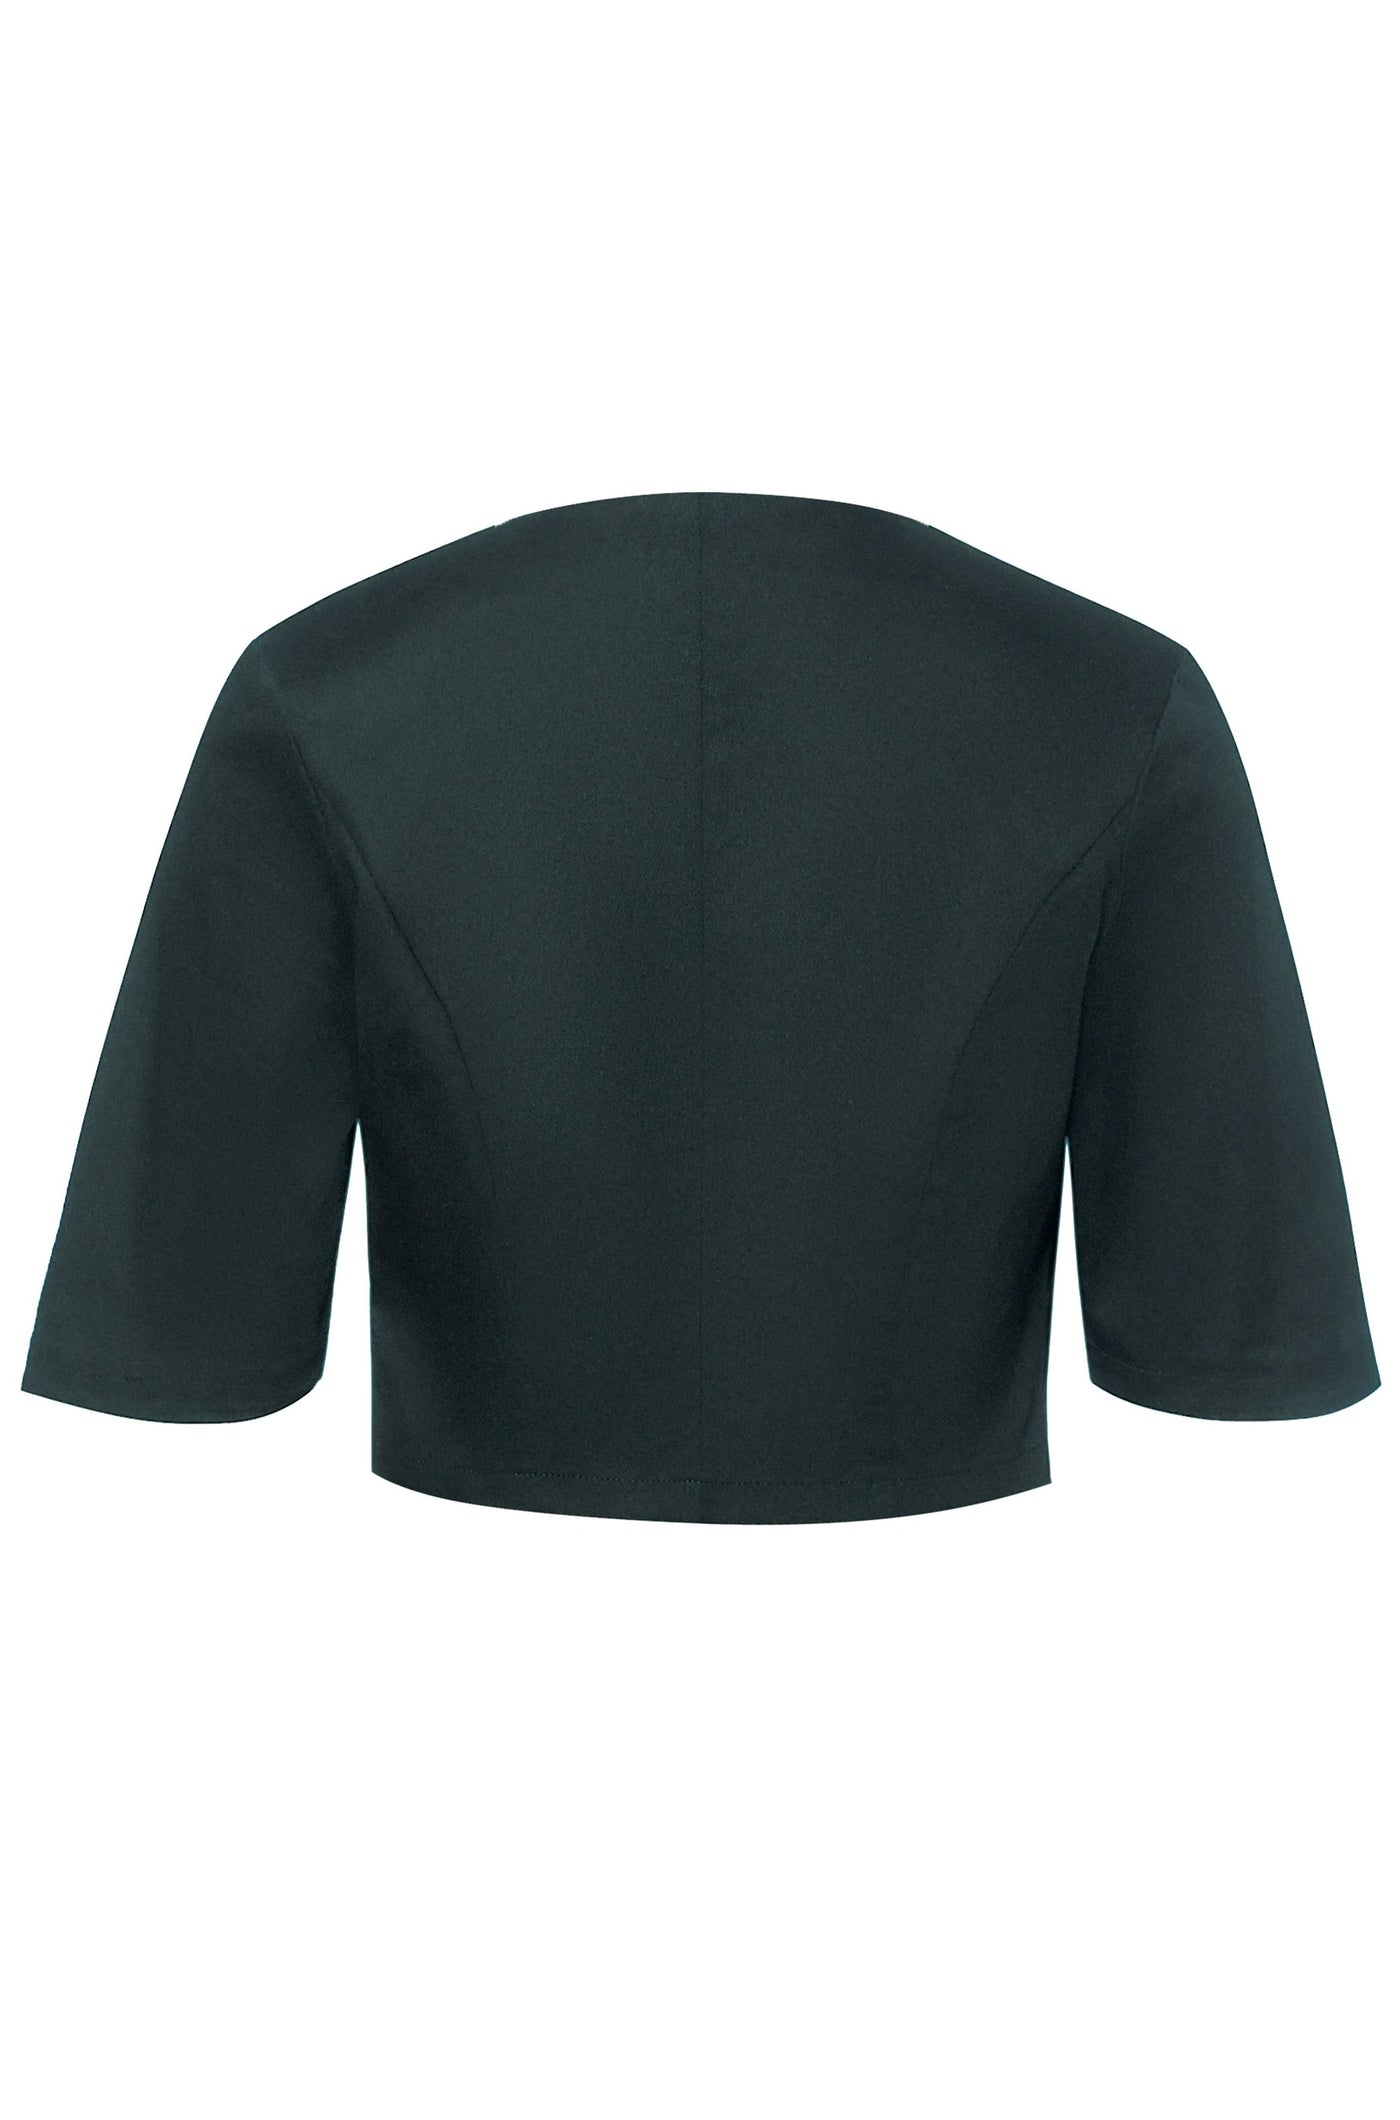 Back view of Dark Green Bolero Jacket